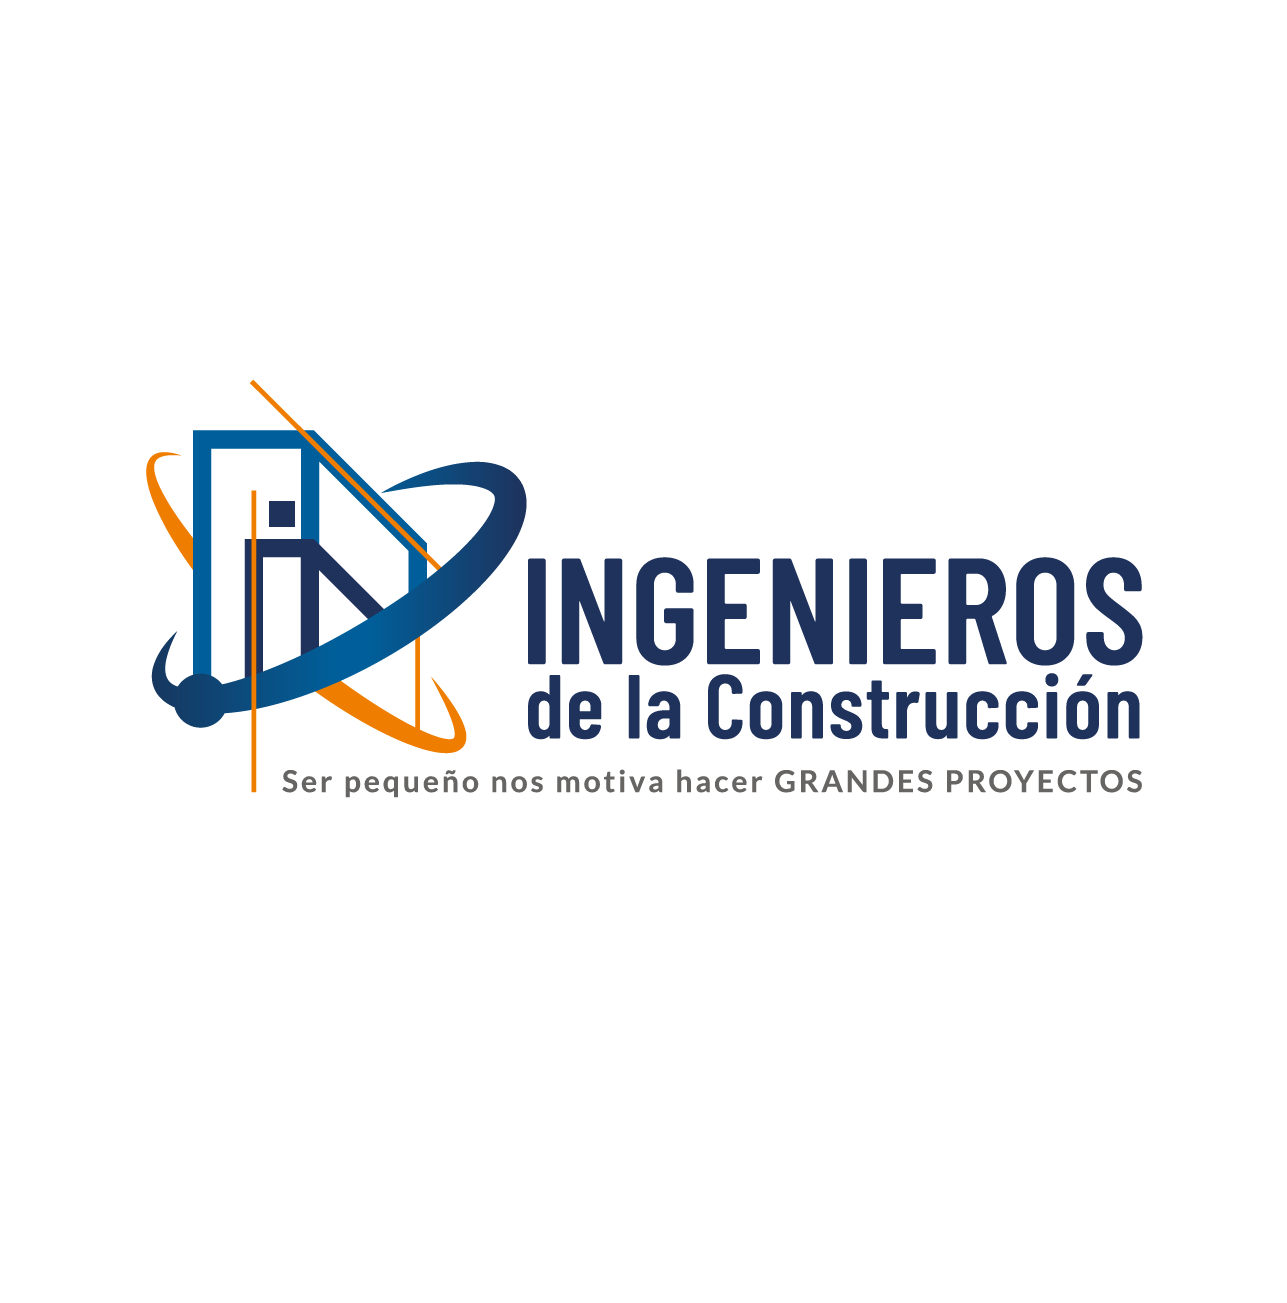 Diseño de Logotipo: Ingenieros de la Construcción - Logos Peru - Diseño de Logos - Agencia de diseño de Logos - Nombres para Restaurantes Peruanos - logos de constructoras - logo de empresas constructoras - diseño de logotipos en lima